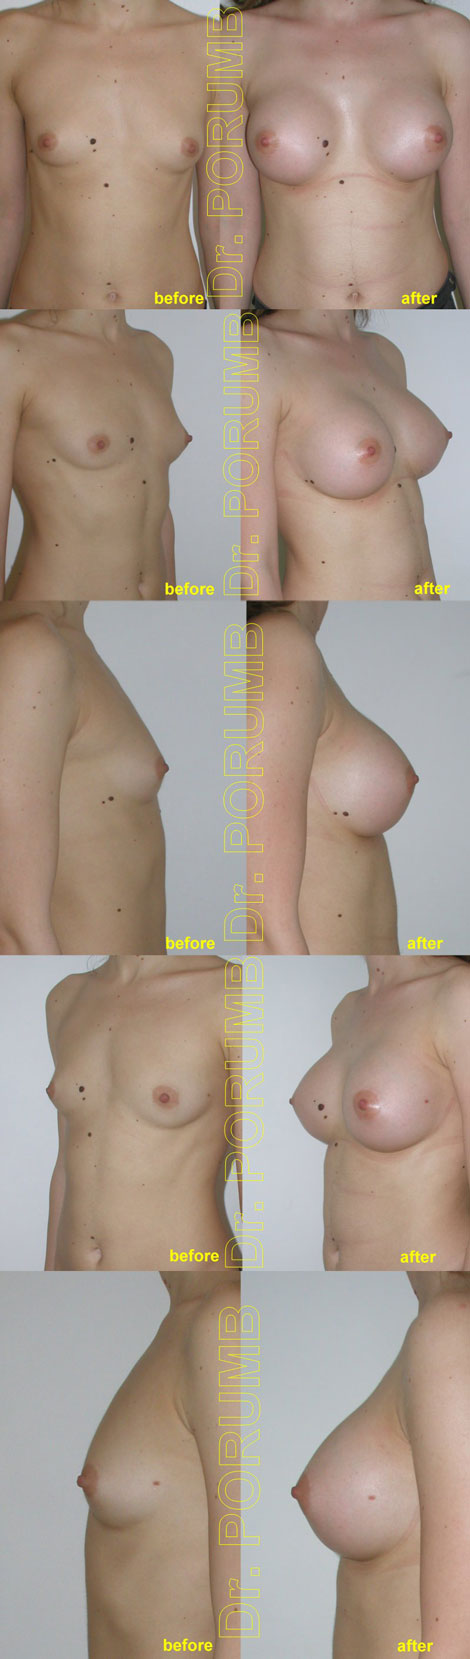 Pacienta de 24 ani, doreste sa apeleze la interventia de augmentare mamara pentru o operatie estetica de marire de sani (silicoane), pentru apropiere sani, mai buna simetrizare, dar si obtinerea unor sani armoniosi, naturali